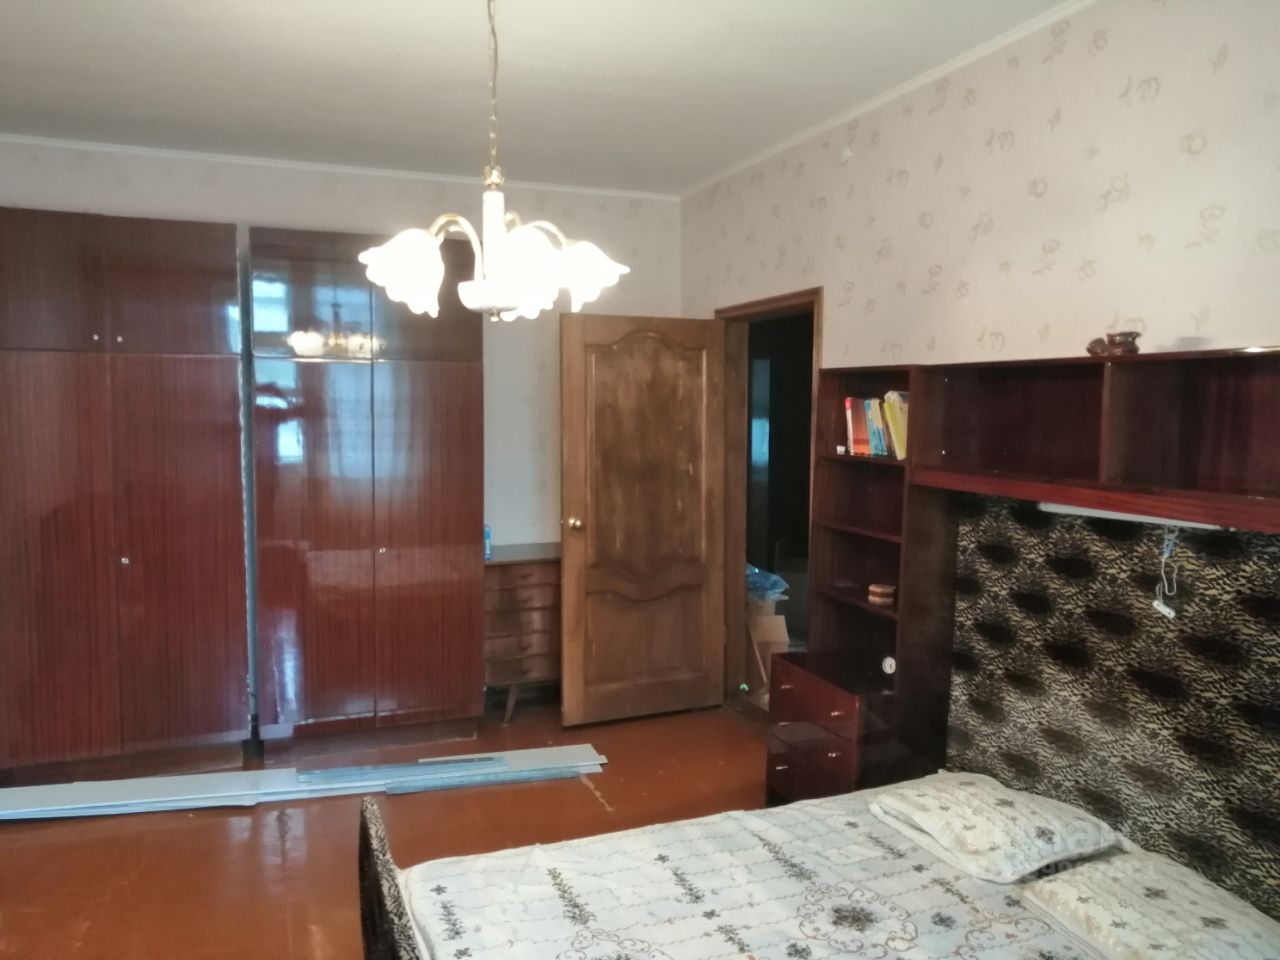 Купить квартиру в новокуйбышевске самарской